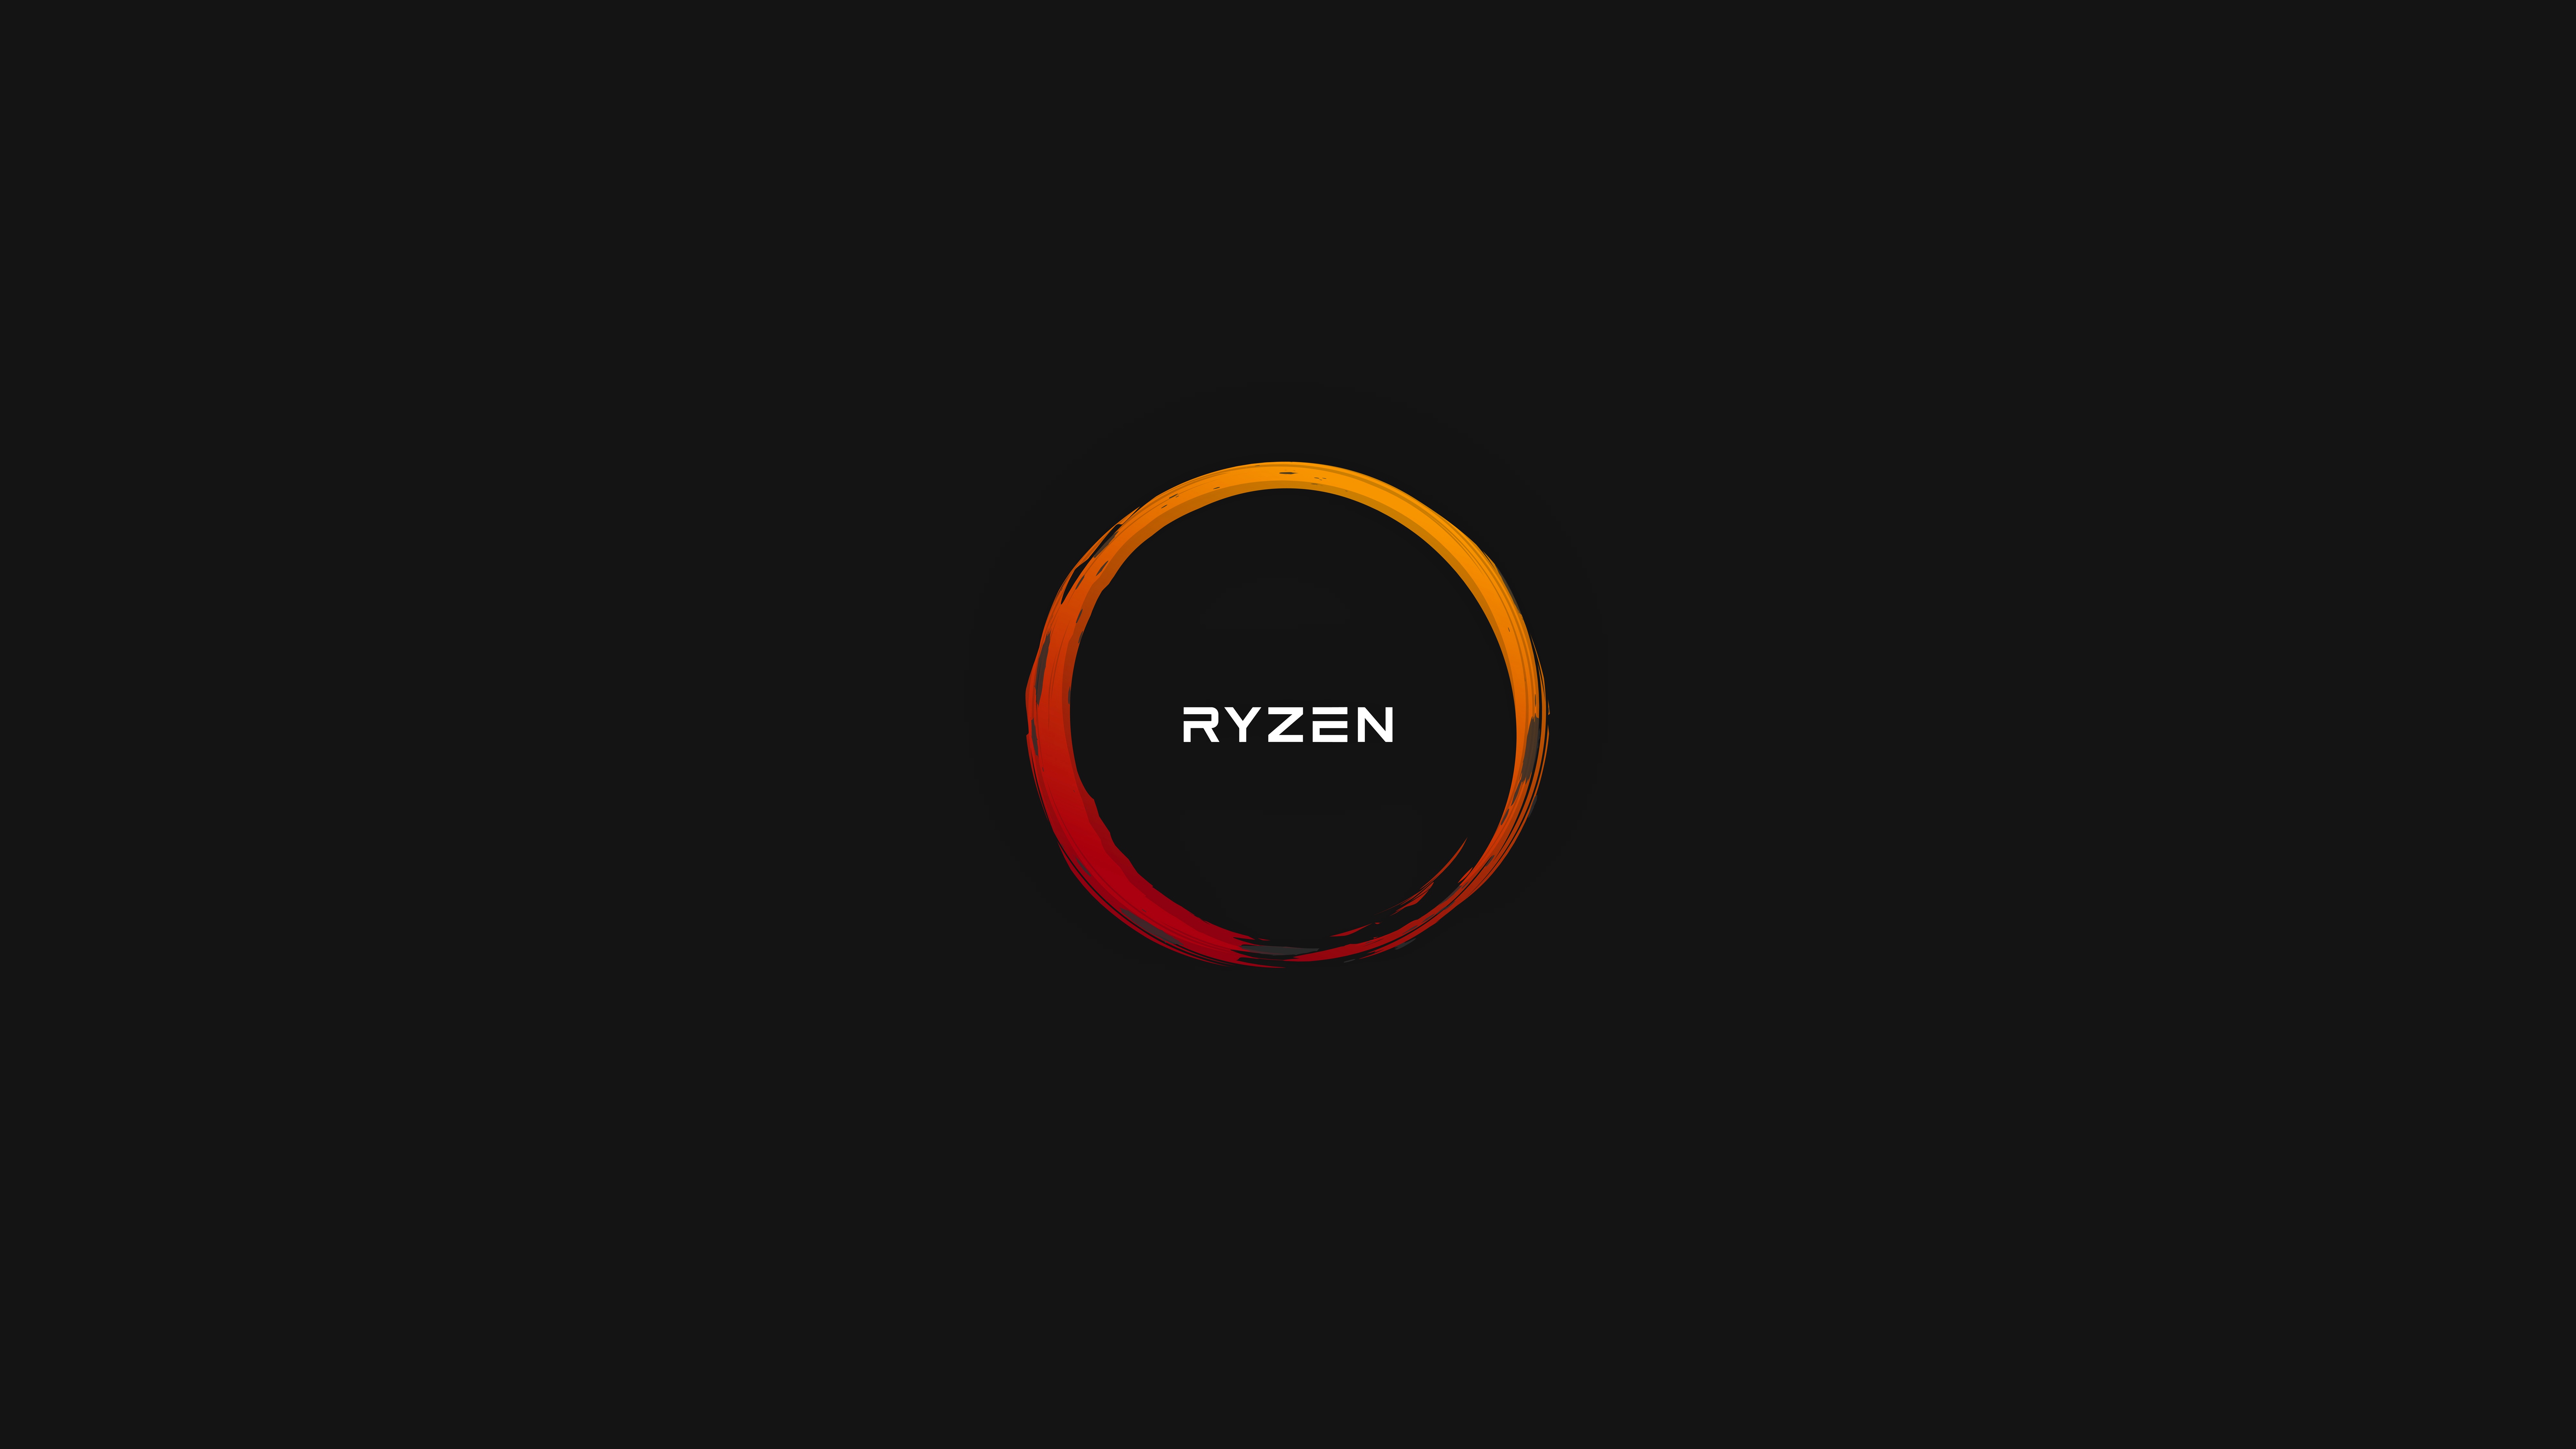 Image Amd Logo Emblem Ryzen Computers Black Background